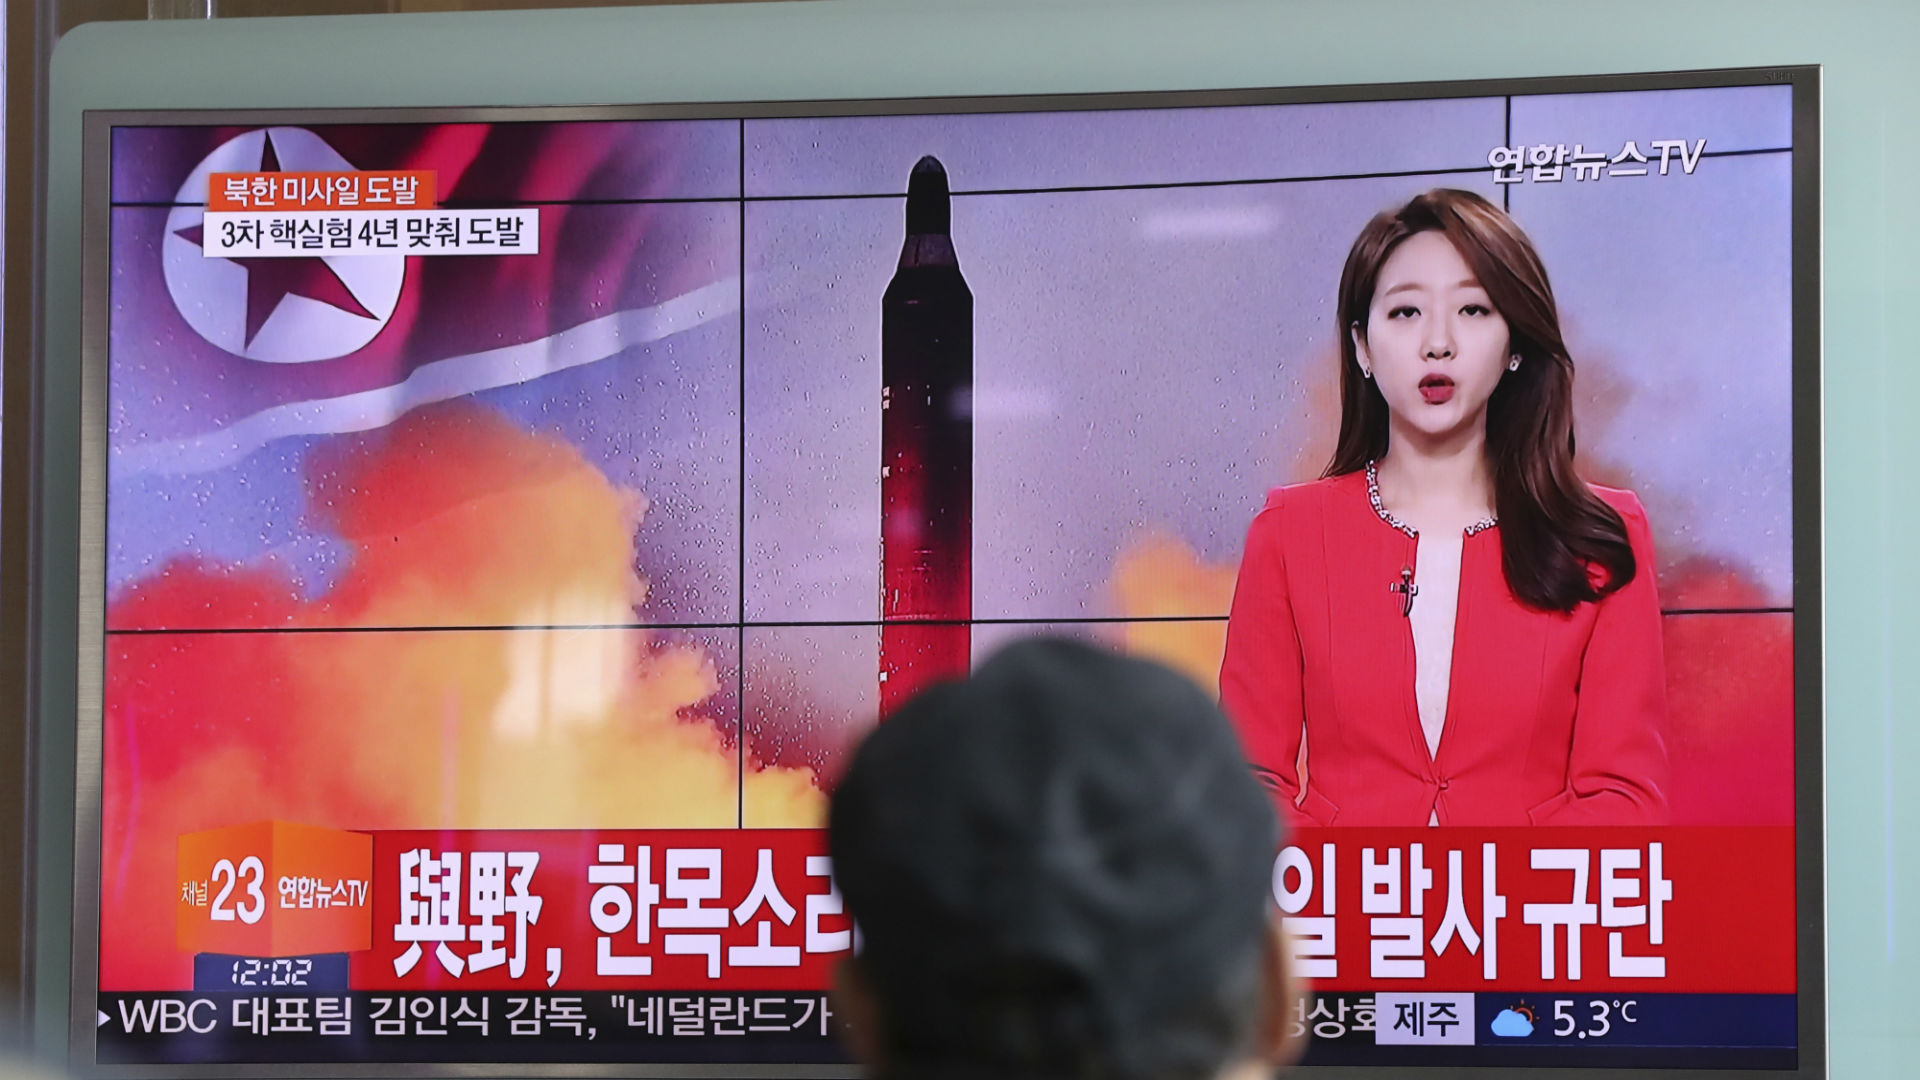 Corea del Norte lanza un nuevo misil balístico al mar